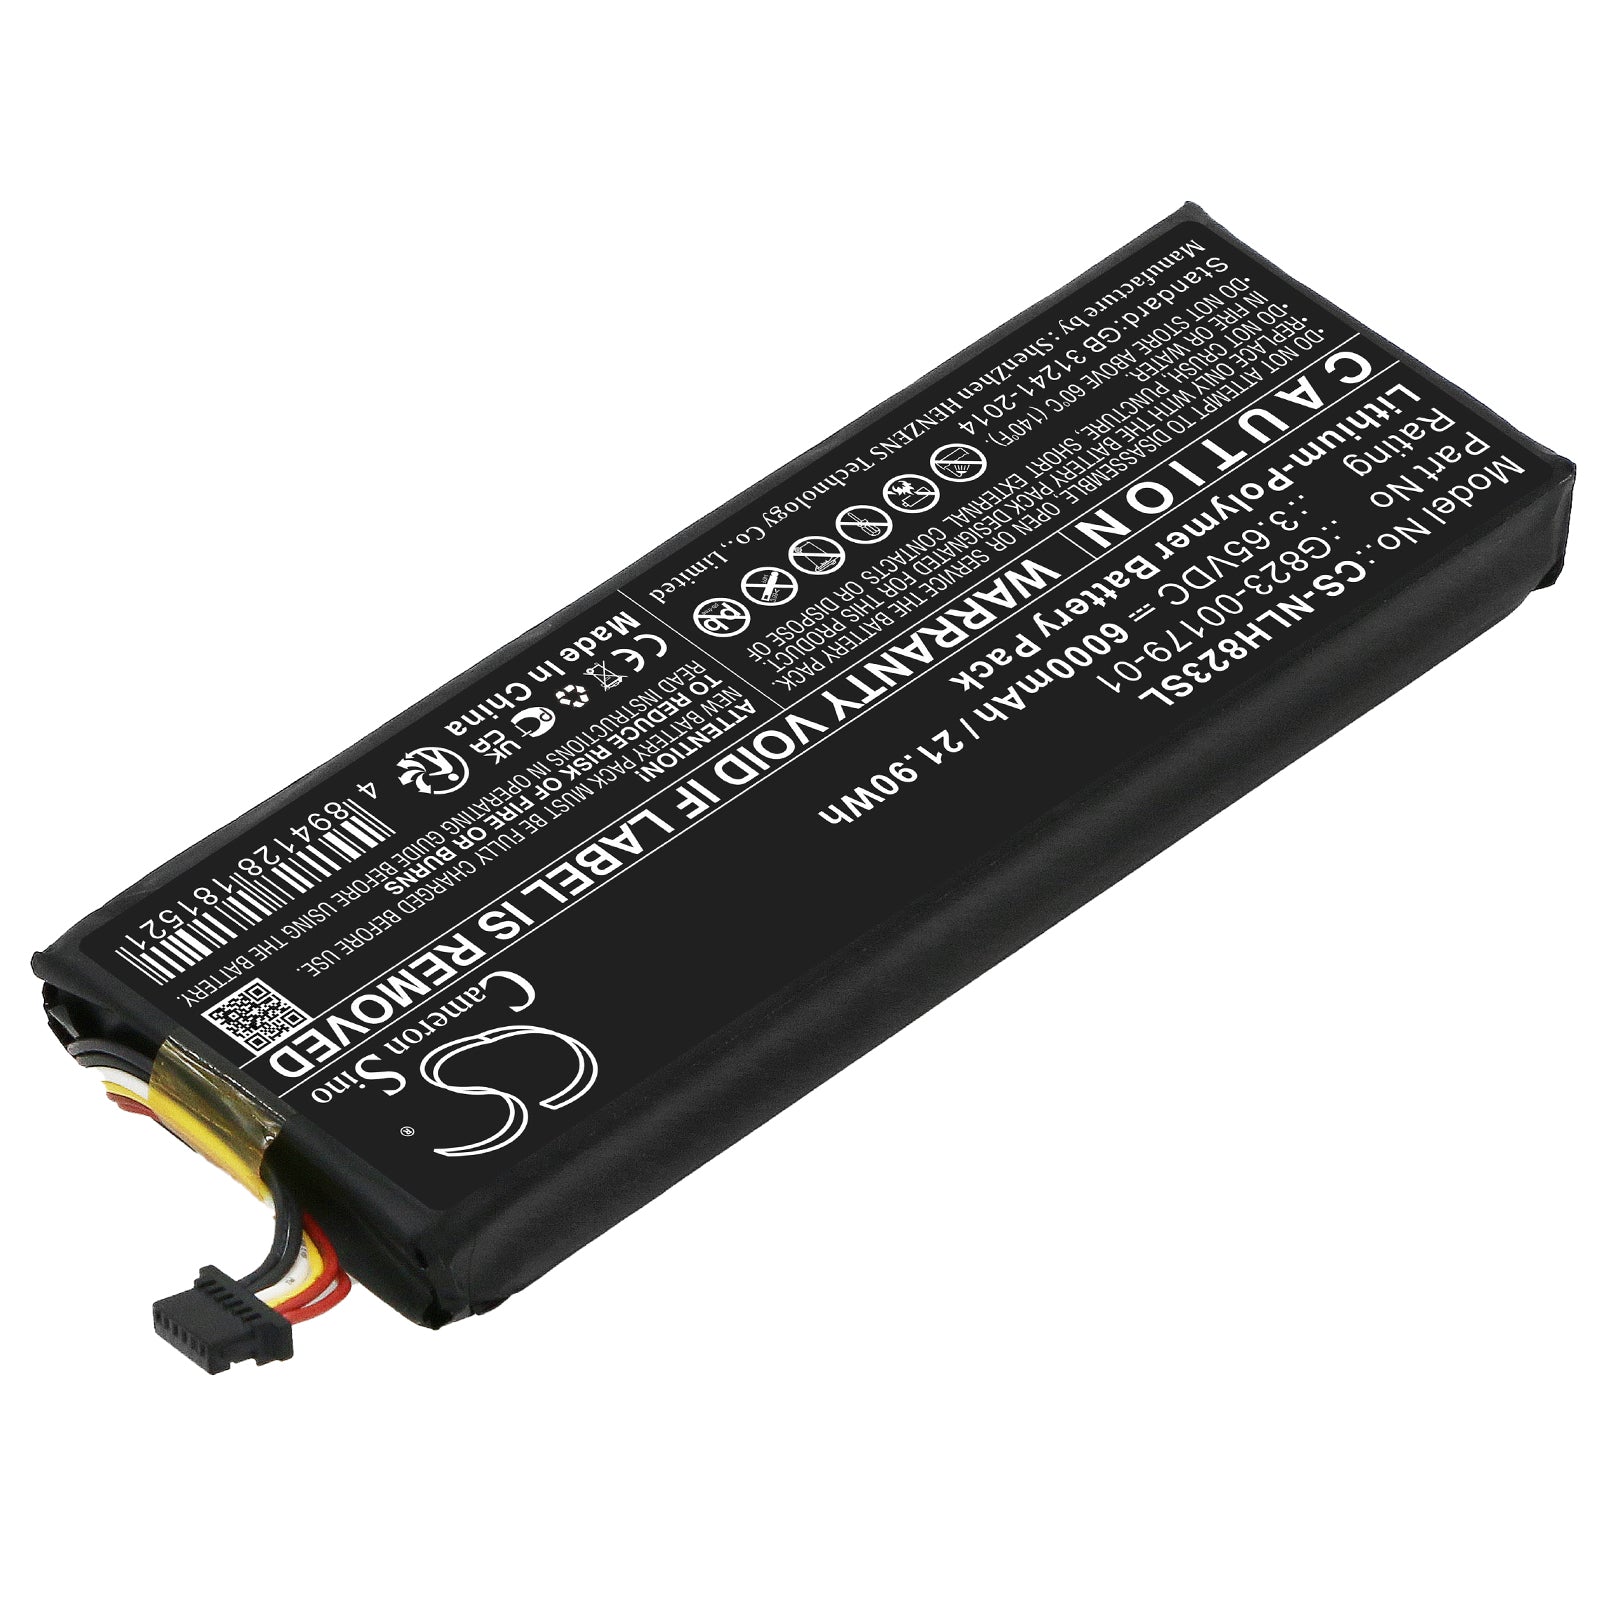 6000mAh G823-00179-01 Battery for Nest Doorbell GQ Style AC-SMAVtronics